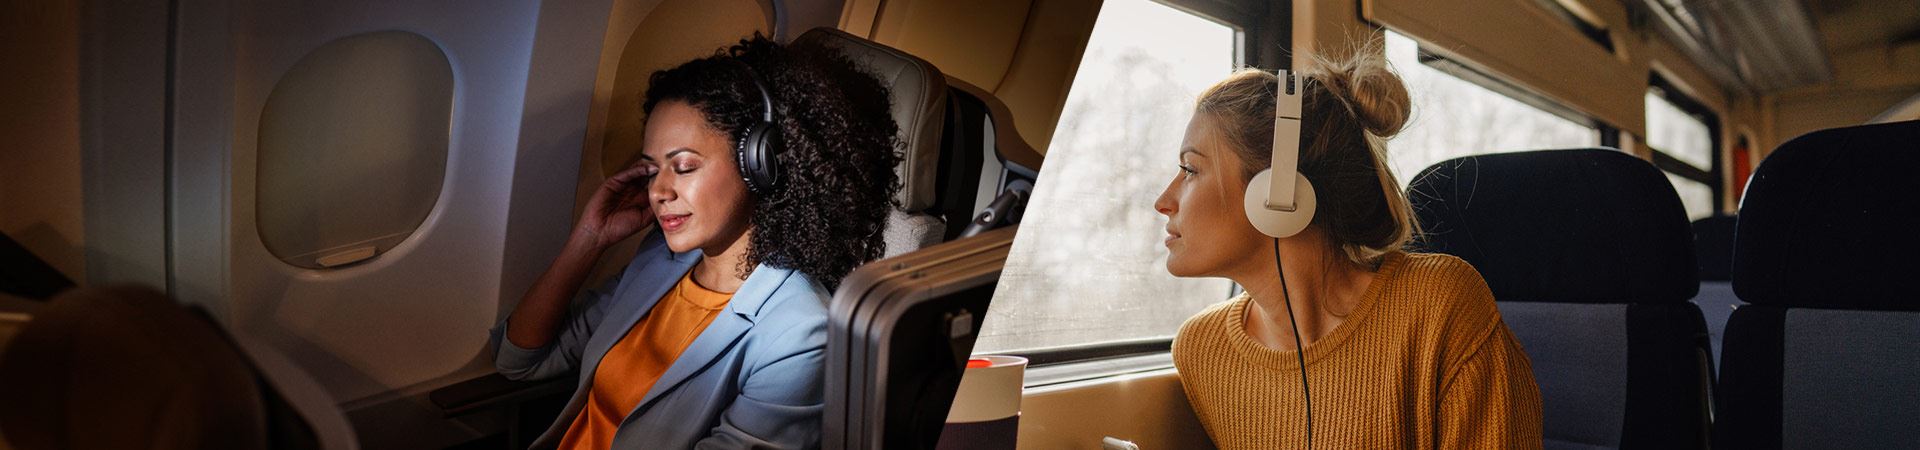 A sinistra, la fotografia di una donna seduta comodamente all'interno di un aereo. A destra, la fotografia di un'altra donna seduta all'interno di un treno, che guarda fuori dal finestrino. Entrambi usano le cuffie. L'atmosfera sull'aereo e sul treno è calma, senza altre persone visibili. 